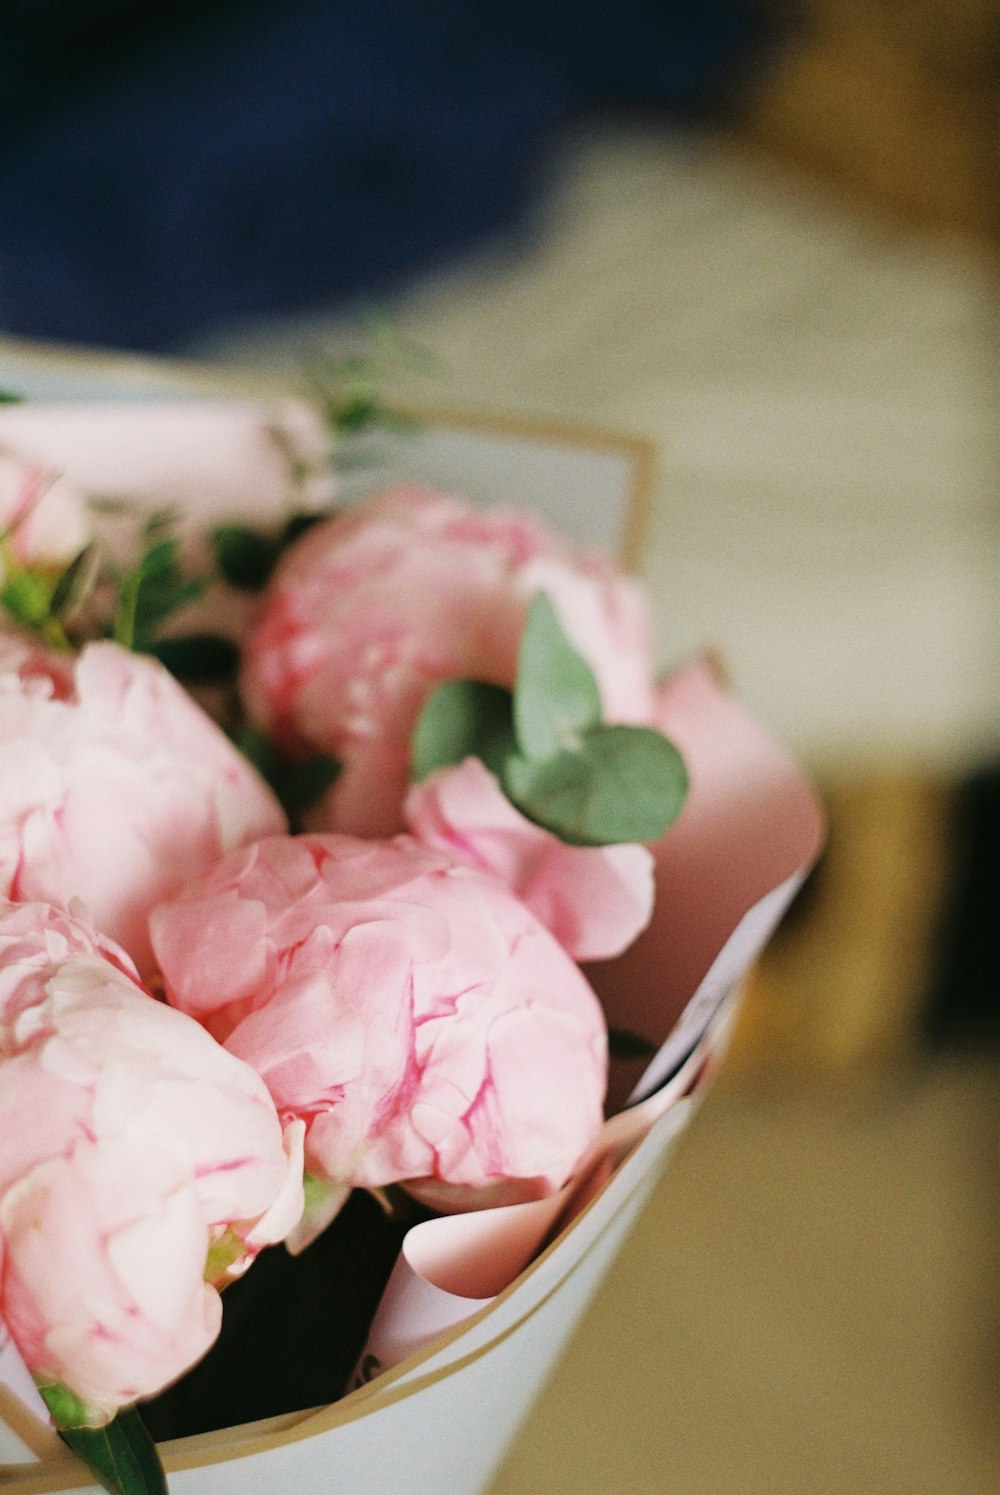 pink roses on white ceramic bowl